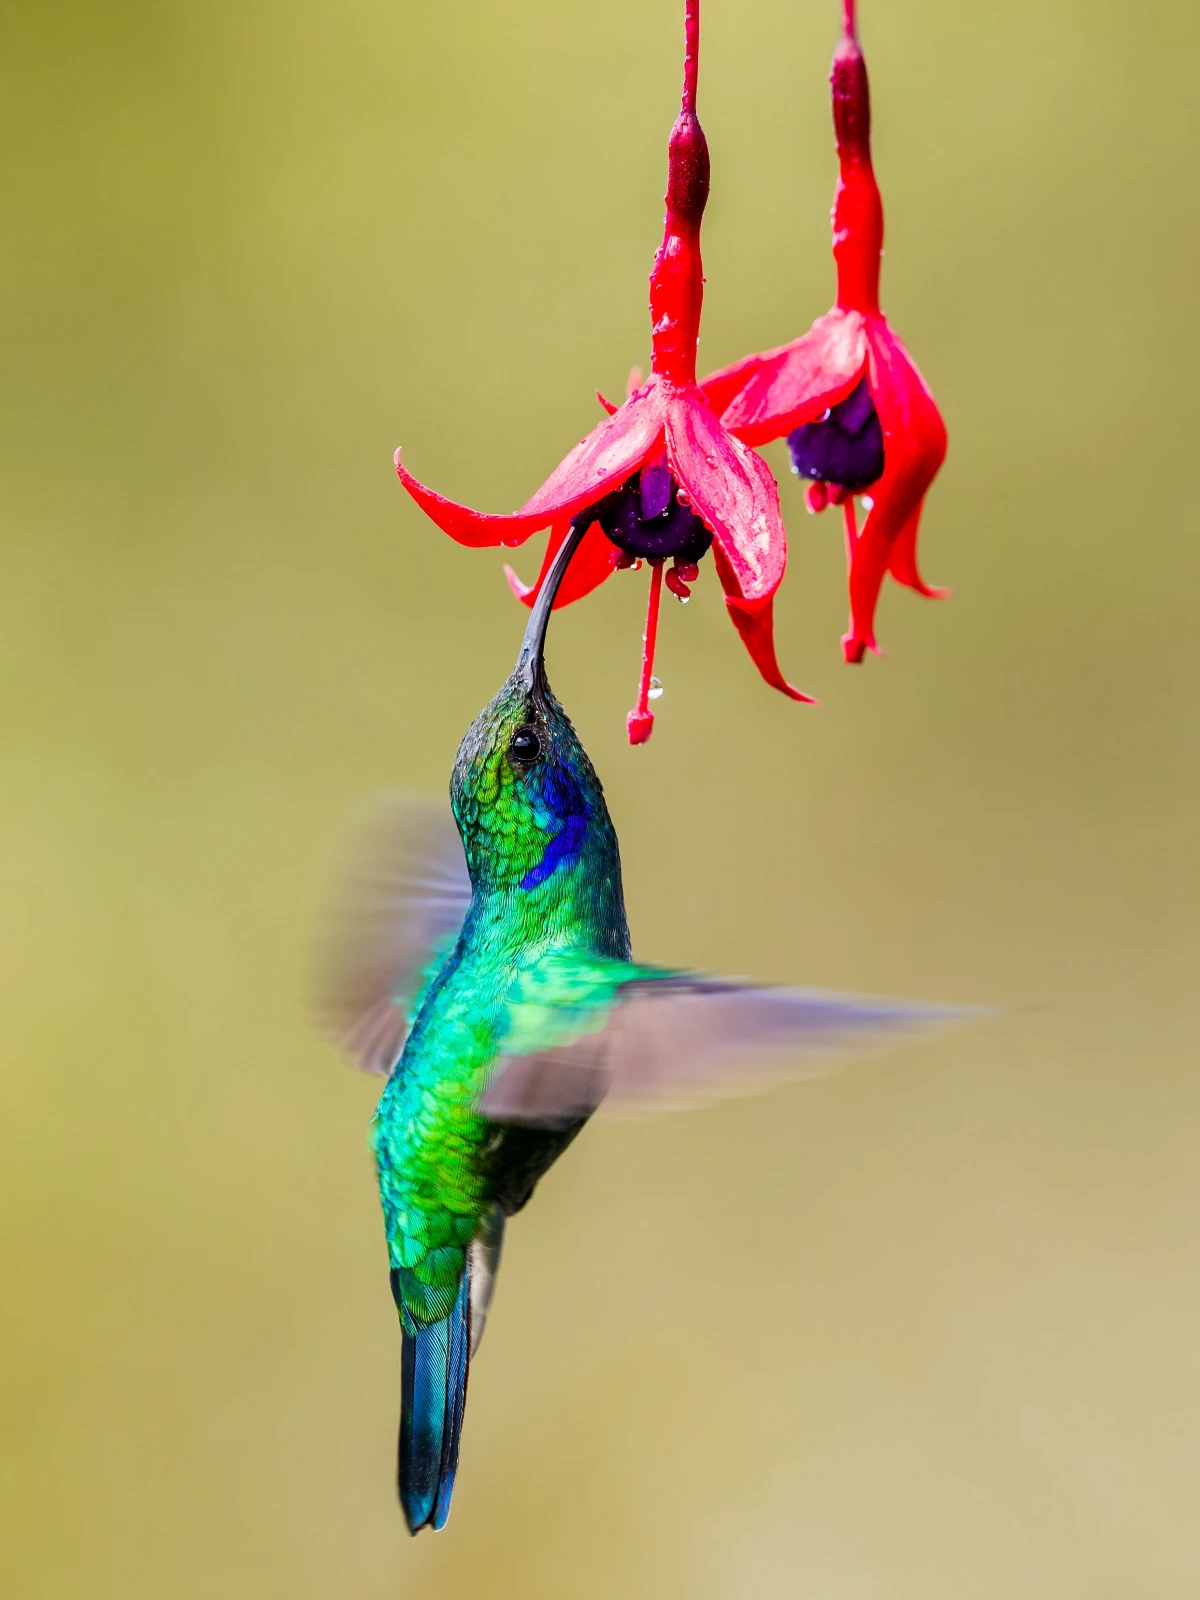 hummingbird drinking nectar from flower